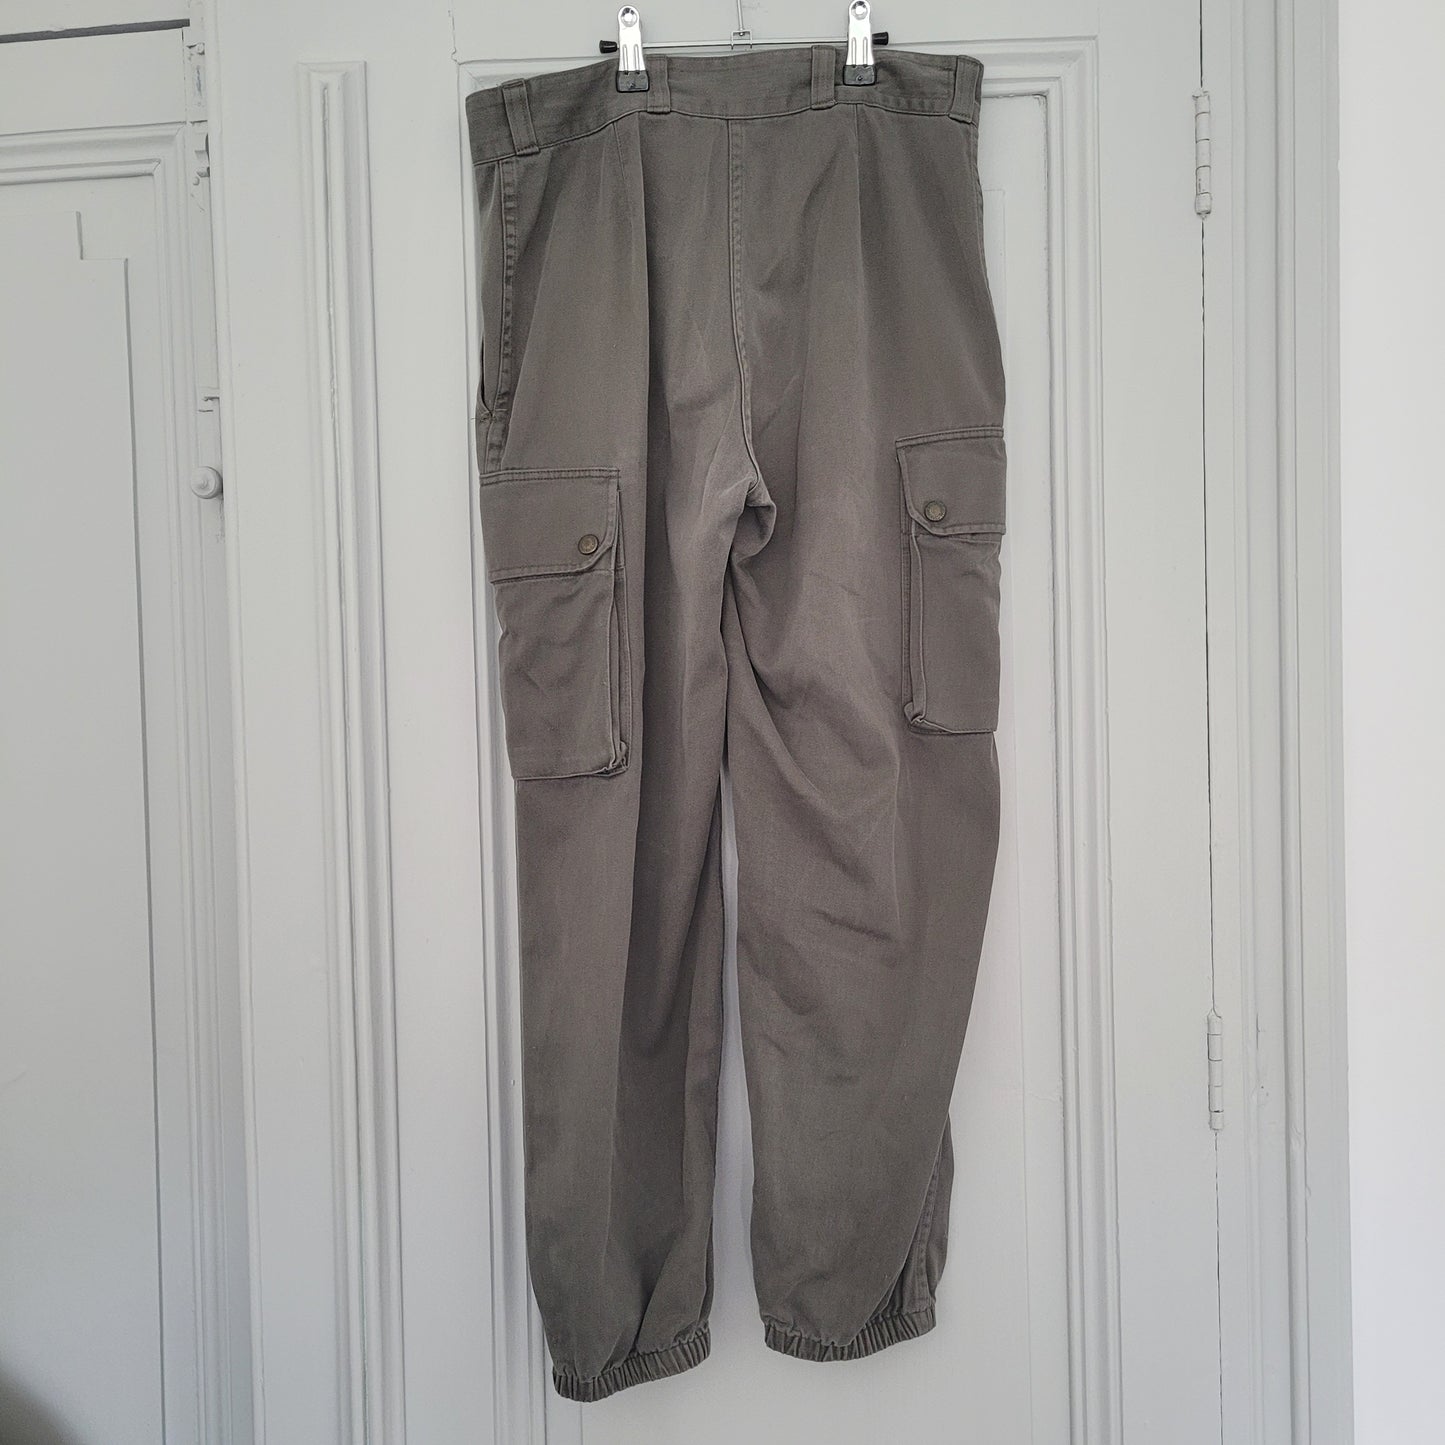 French army pant 90's / pantalon armée française années 90